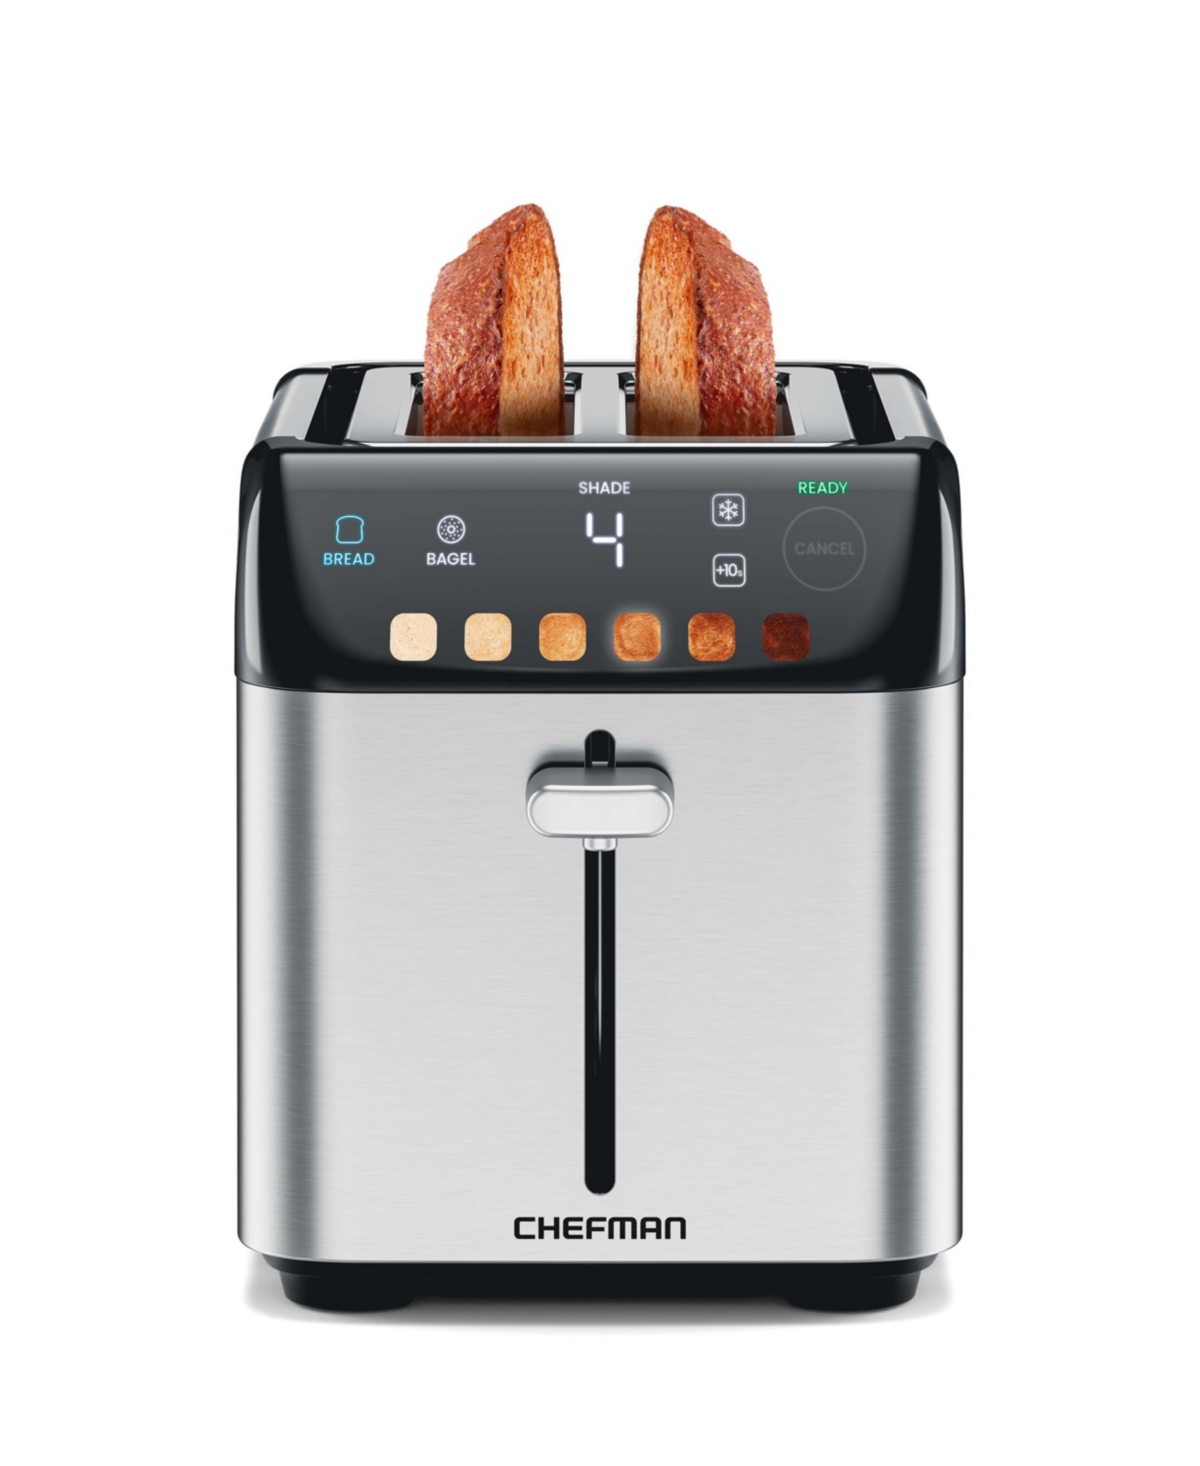 Chefman Smart Toaster 2 Slice In Metallic